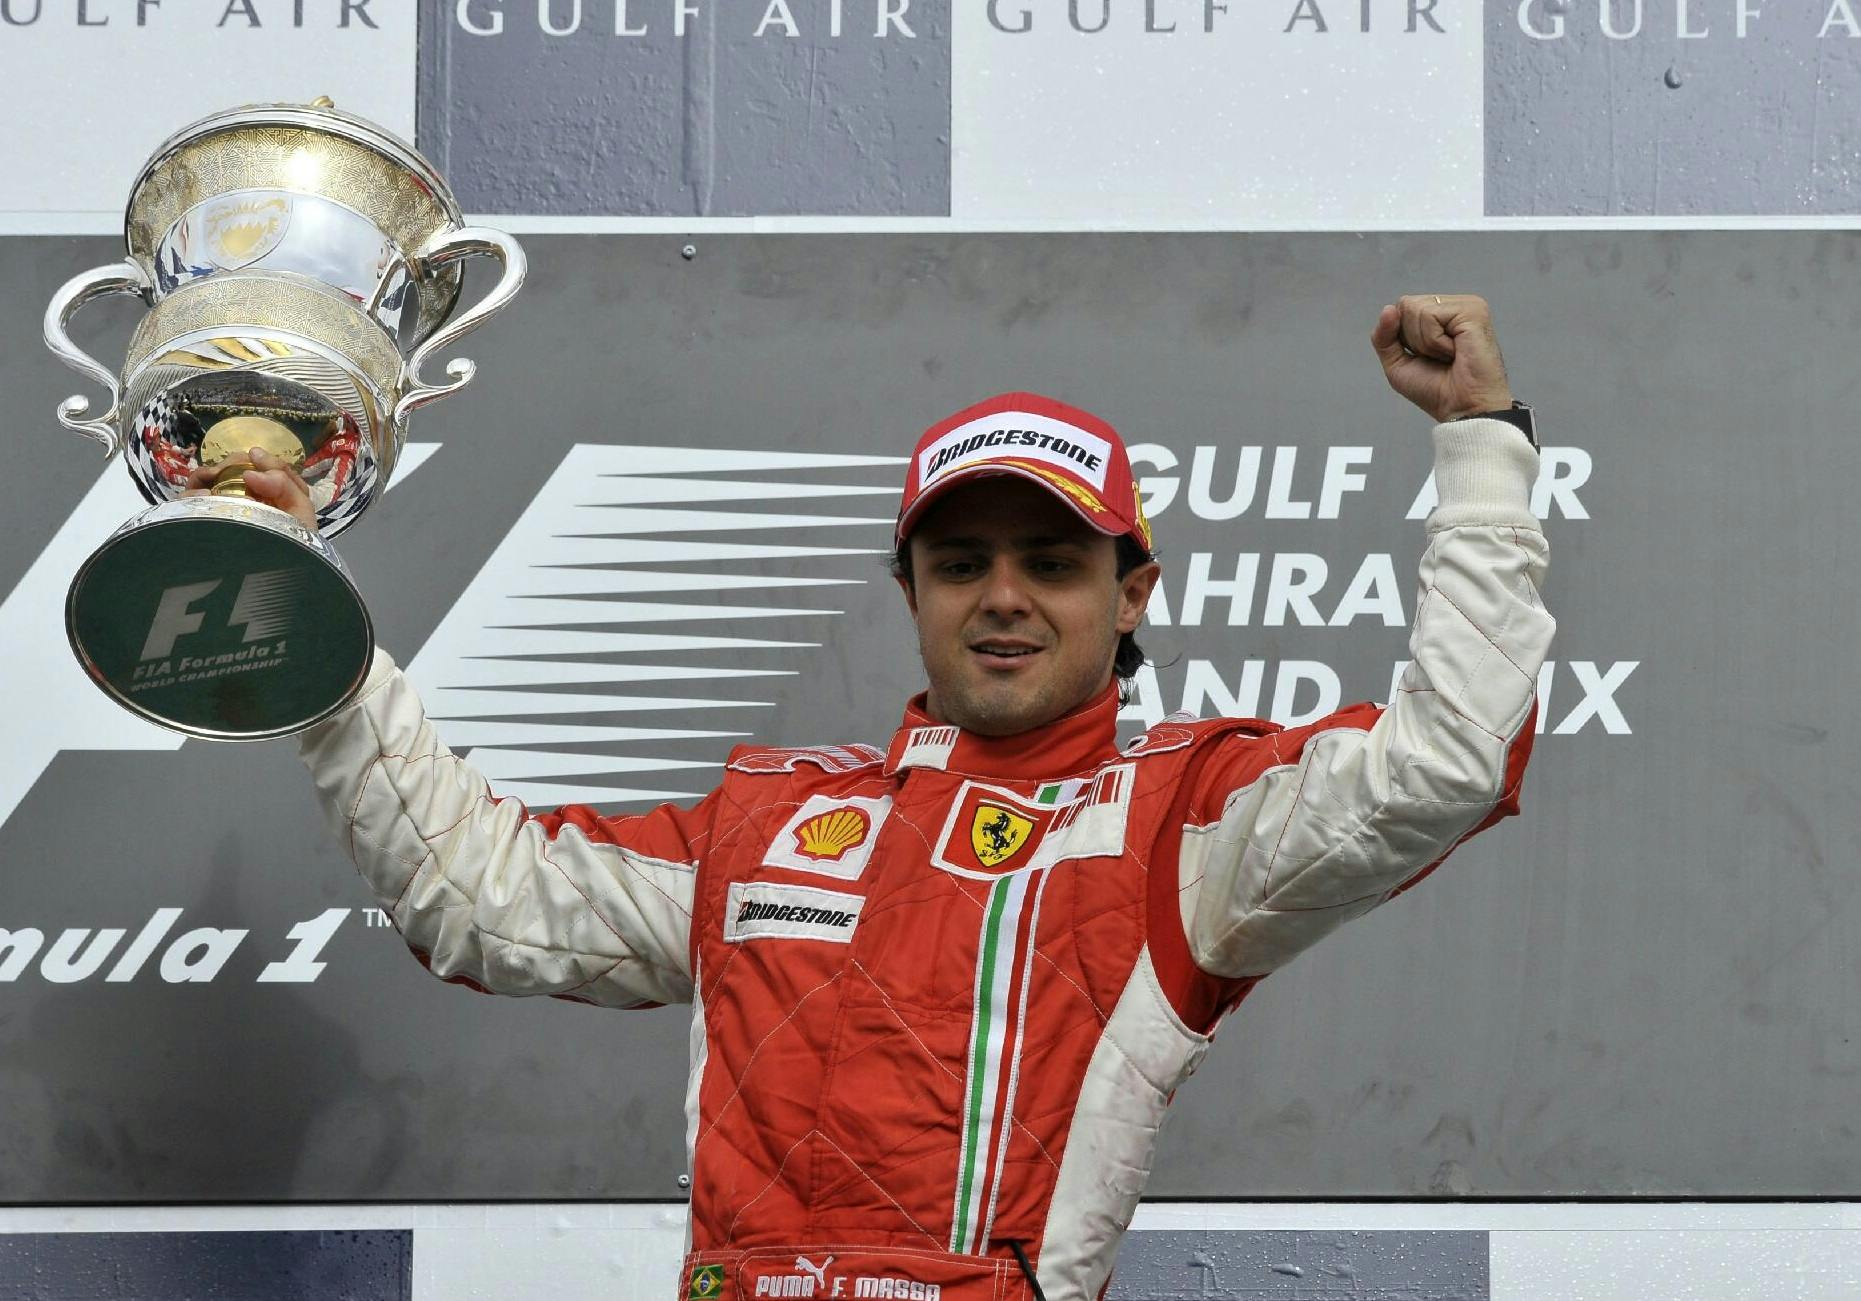 Massa domaga się mistrzostwa z 2008 roku, a nie samych pieniędzy